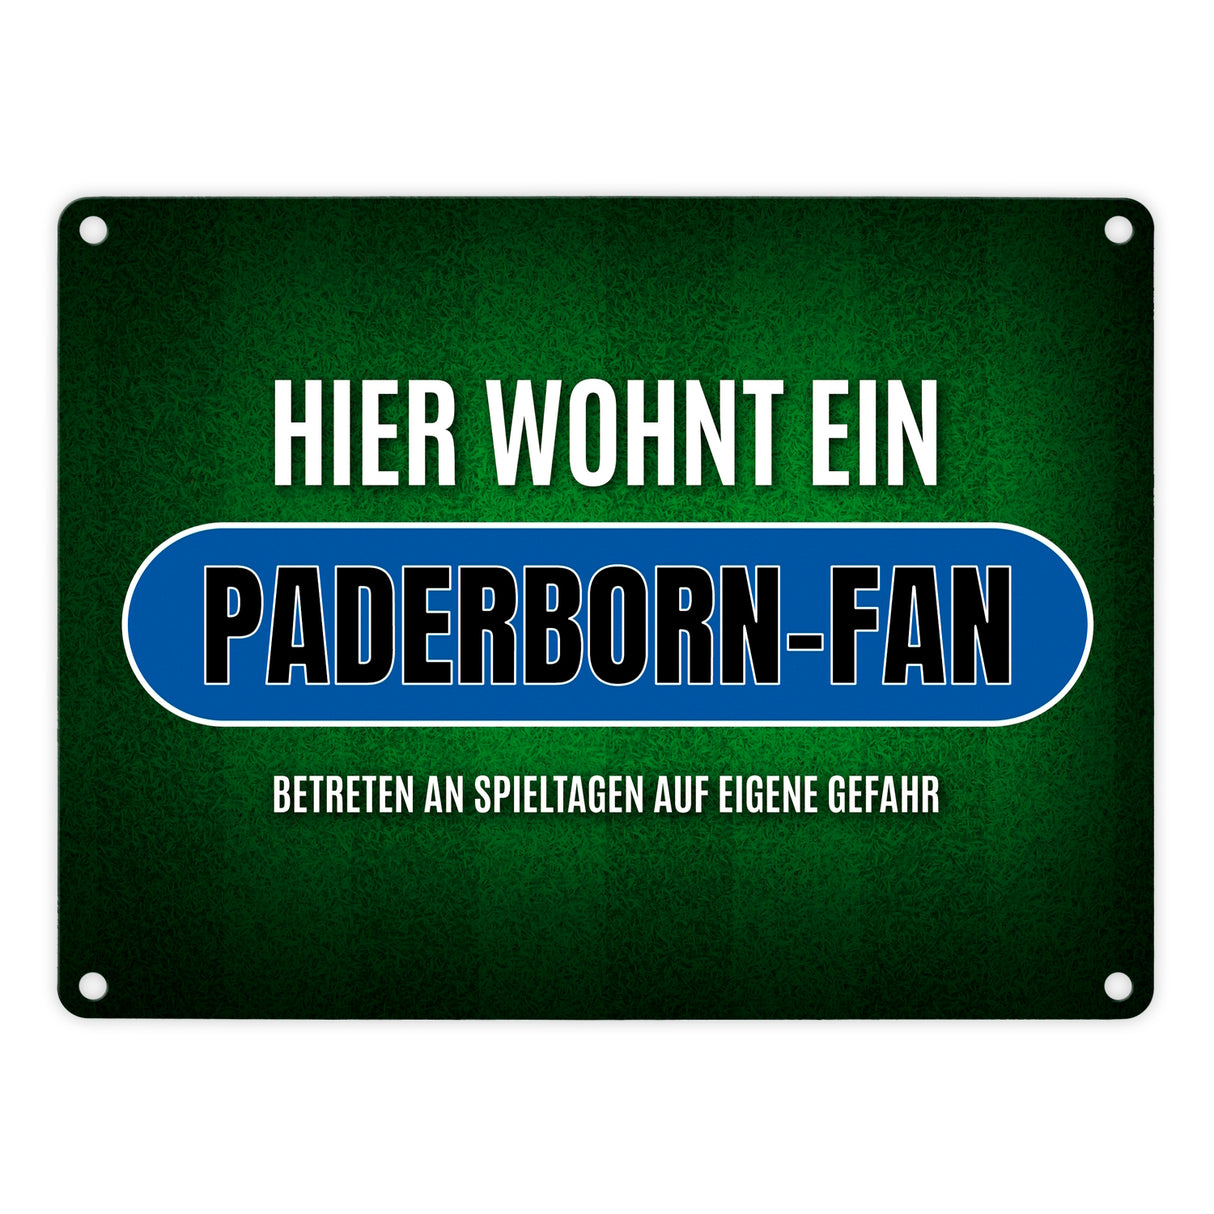 Hier wohnt ein Paderborn-Fan Metallschild mit Rasen Motiv